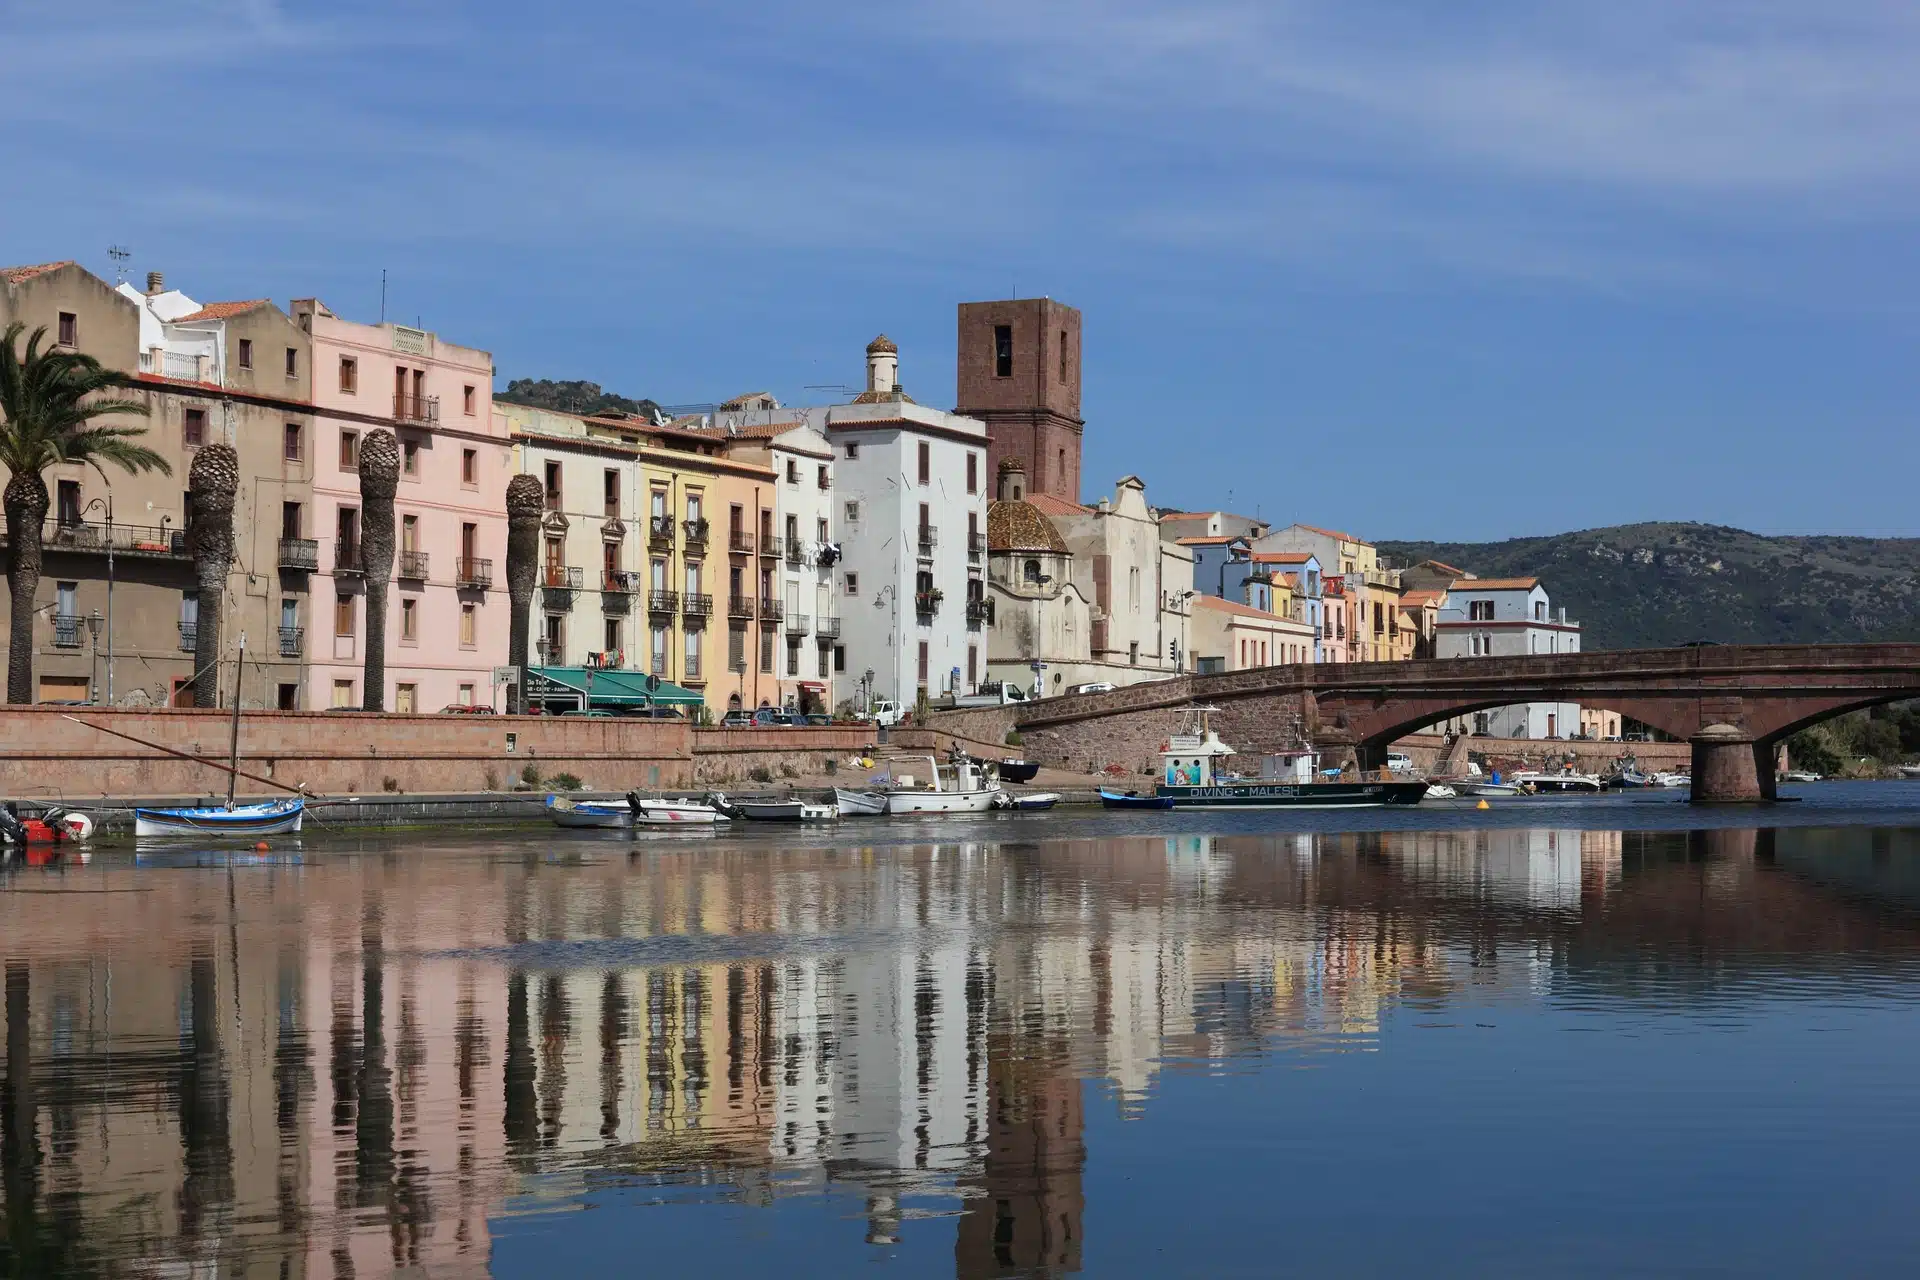 La Sardegna colorata che si specchia sul fiume Temo